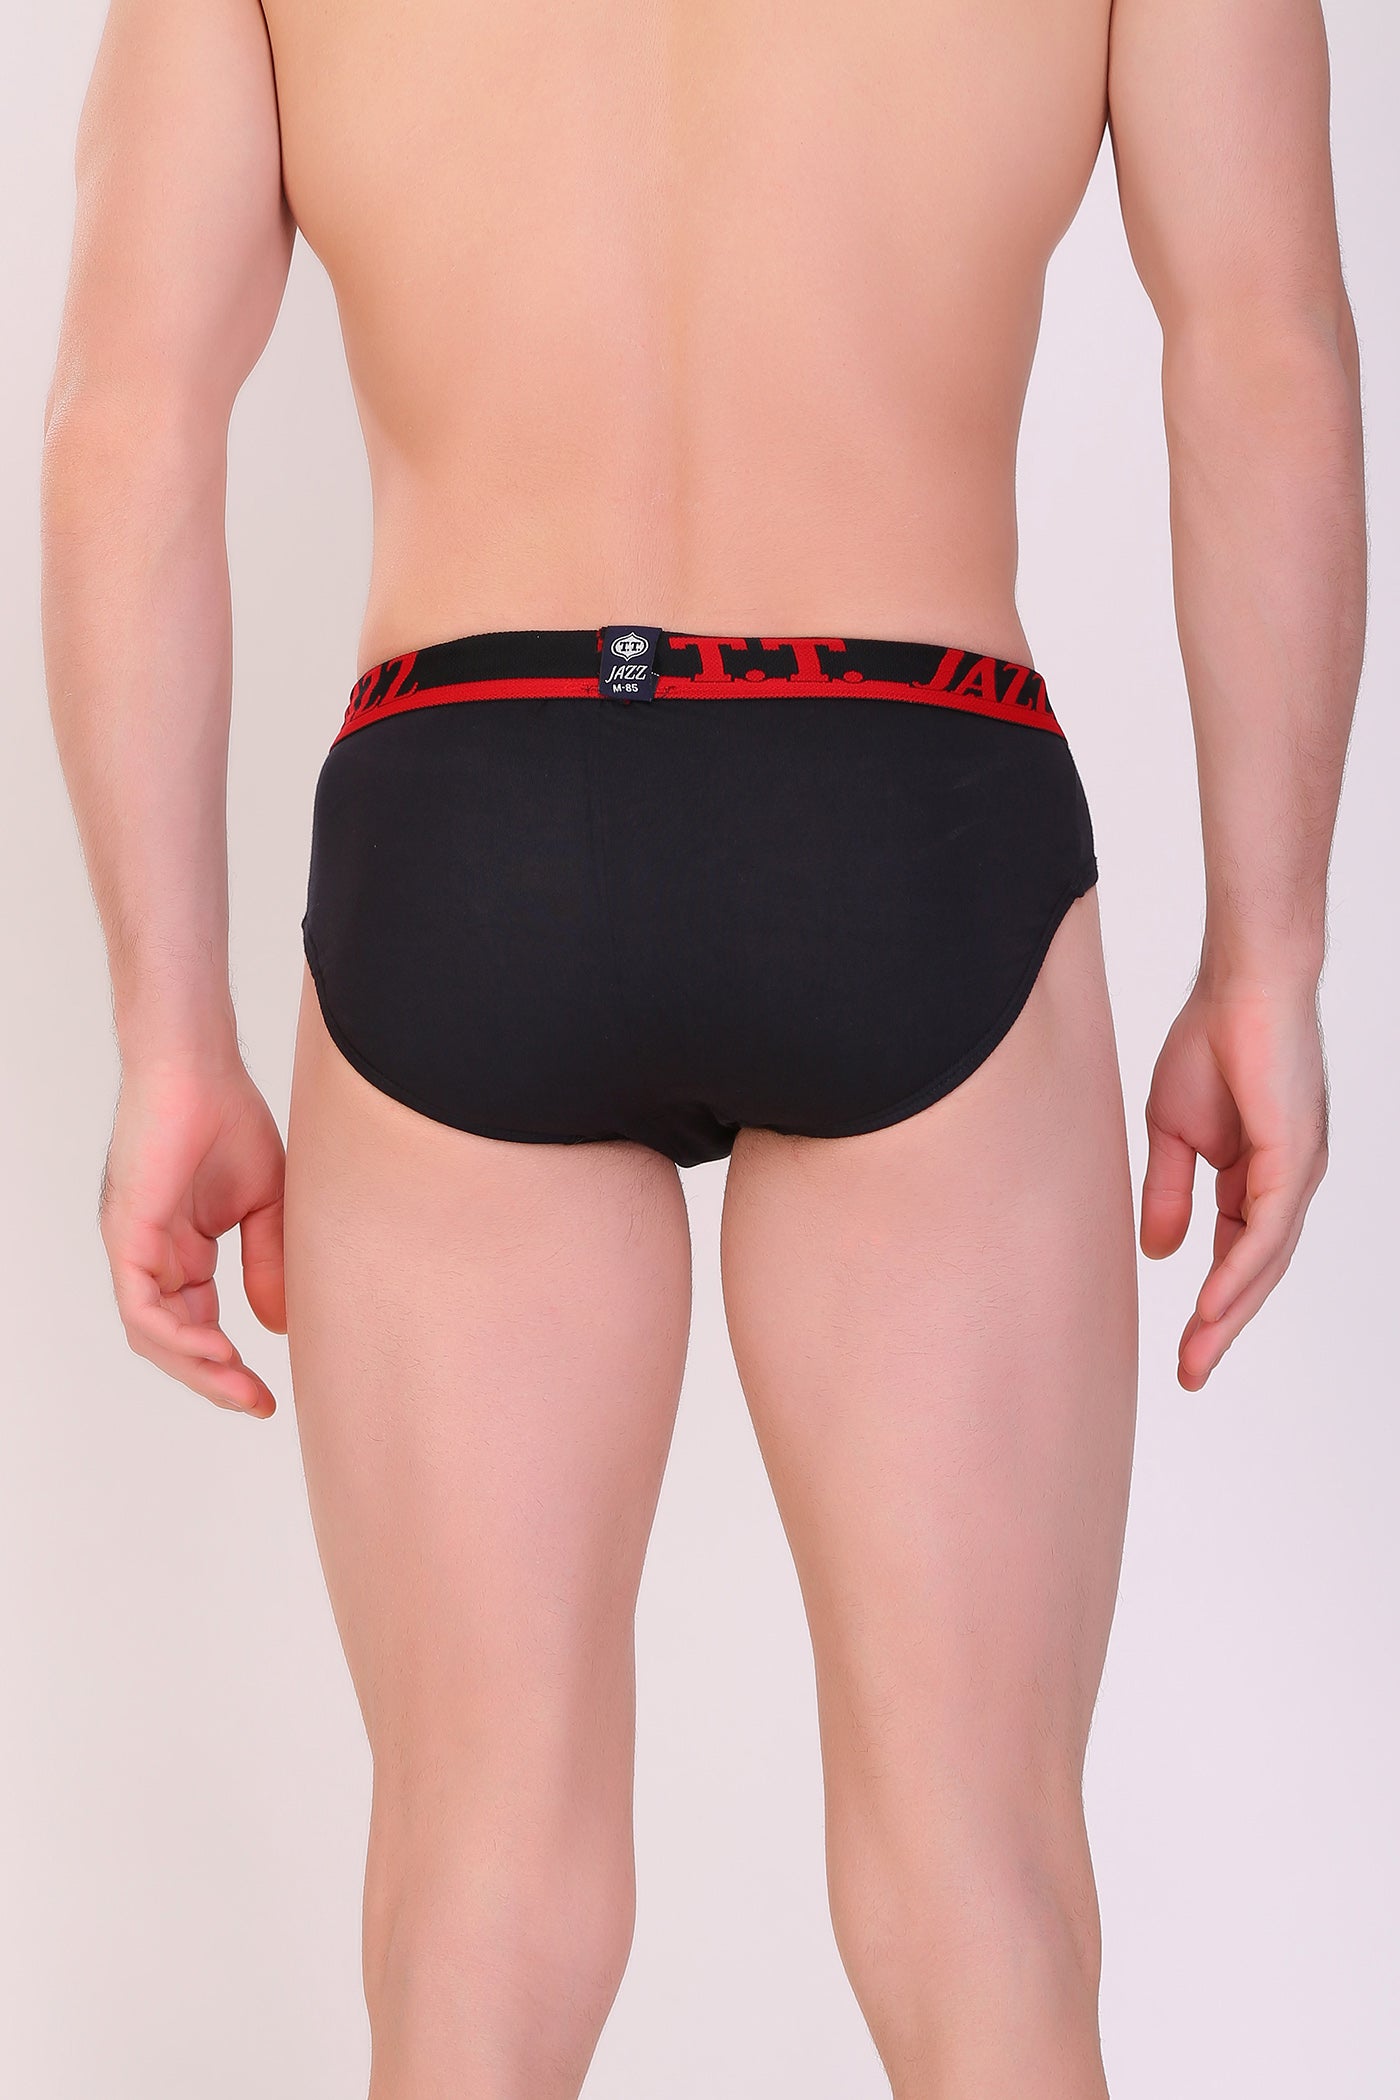 Buy TT Jazz Brief Underwear For Men (Pack Of 5): TT Bazaar